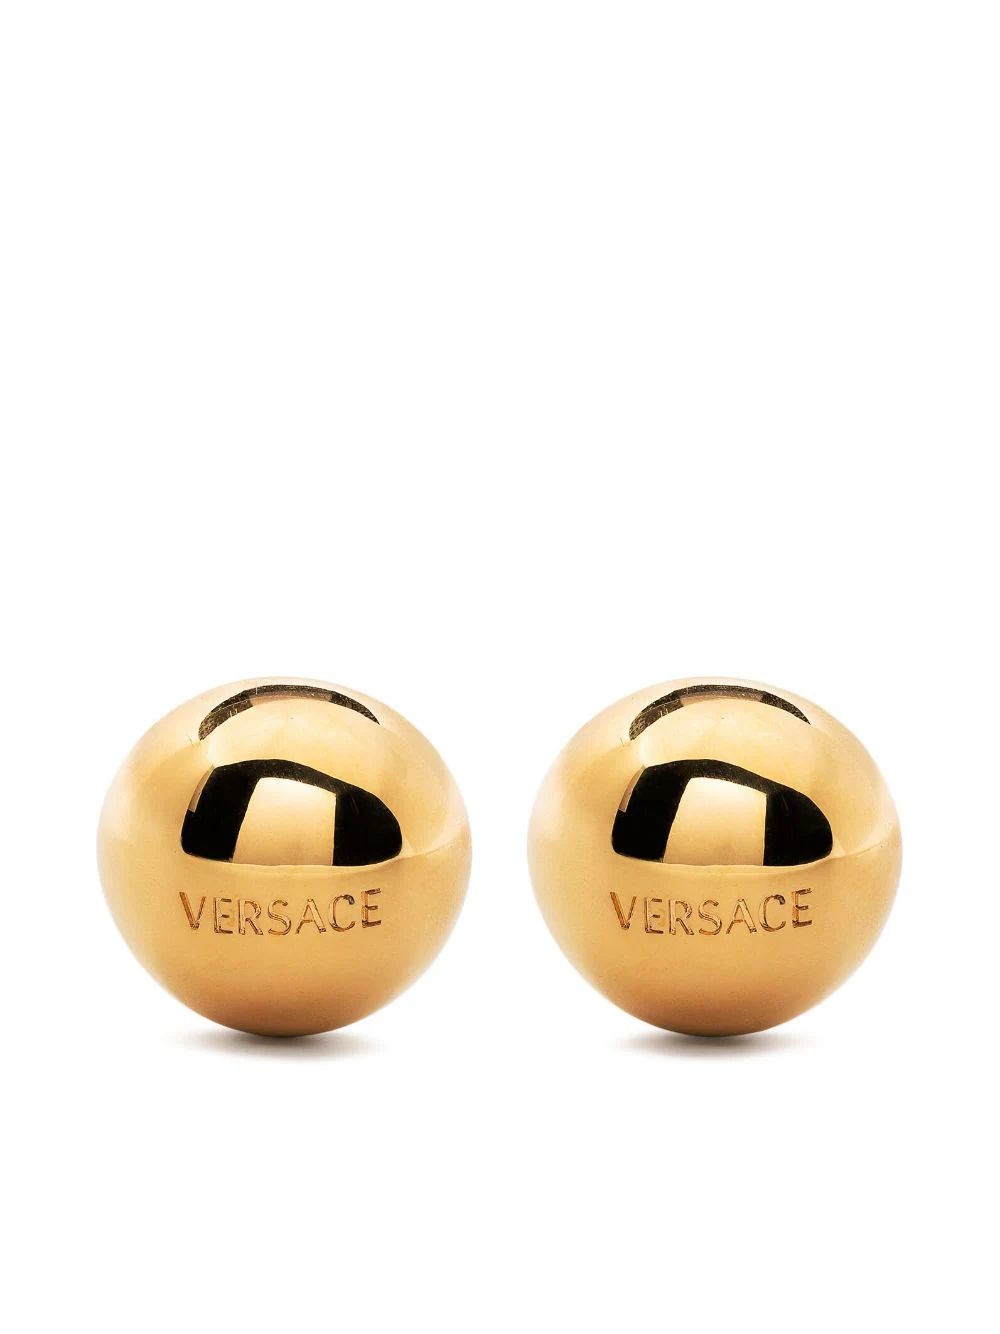 Versace Sphere Versace Tiles Earrings - Farfetch | Farfetch Global